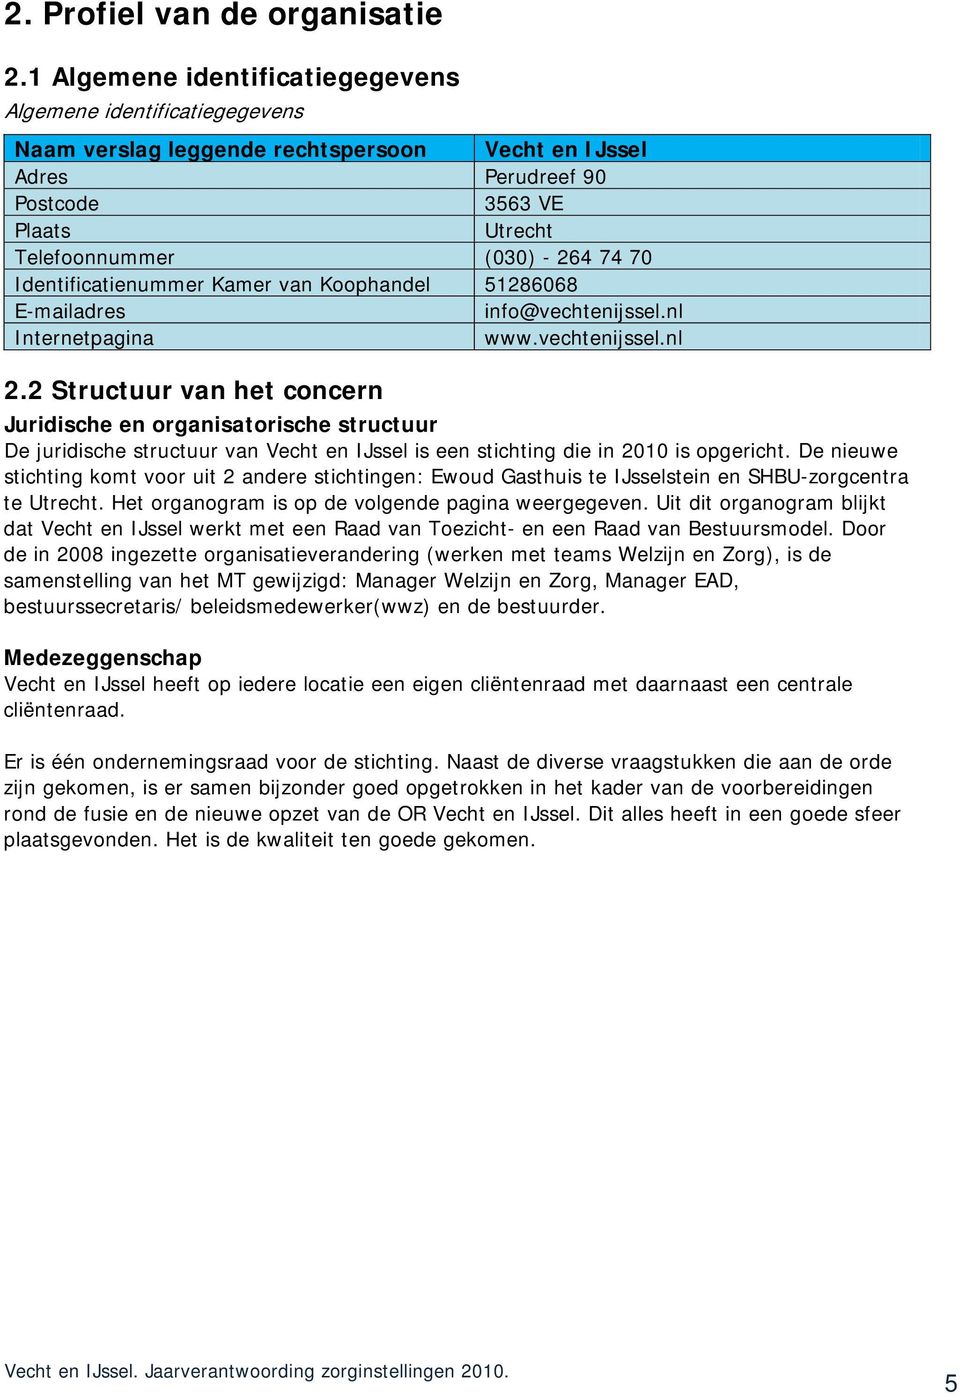 Identificatienummer Kamer van Koophandel 51286068 E-mailadres info@vechtenijssel.nl Internetpagina www.vechtenijssel.nl 2.